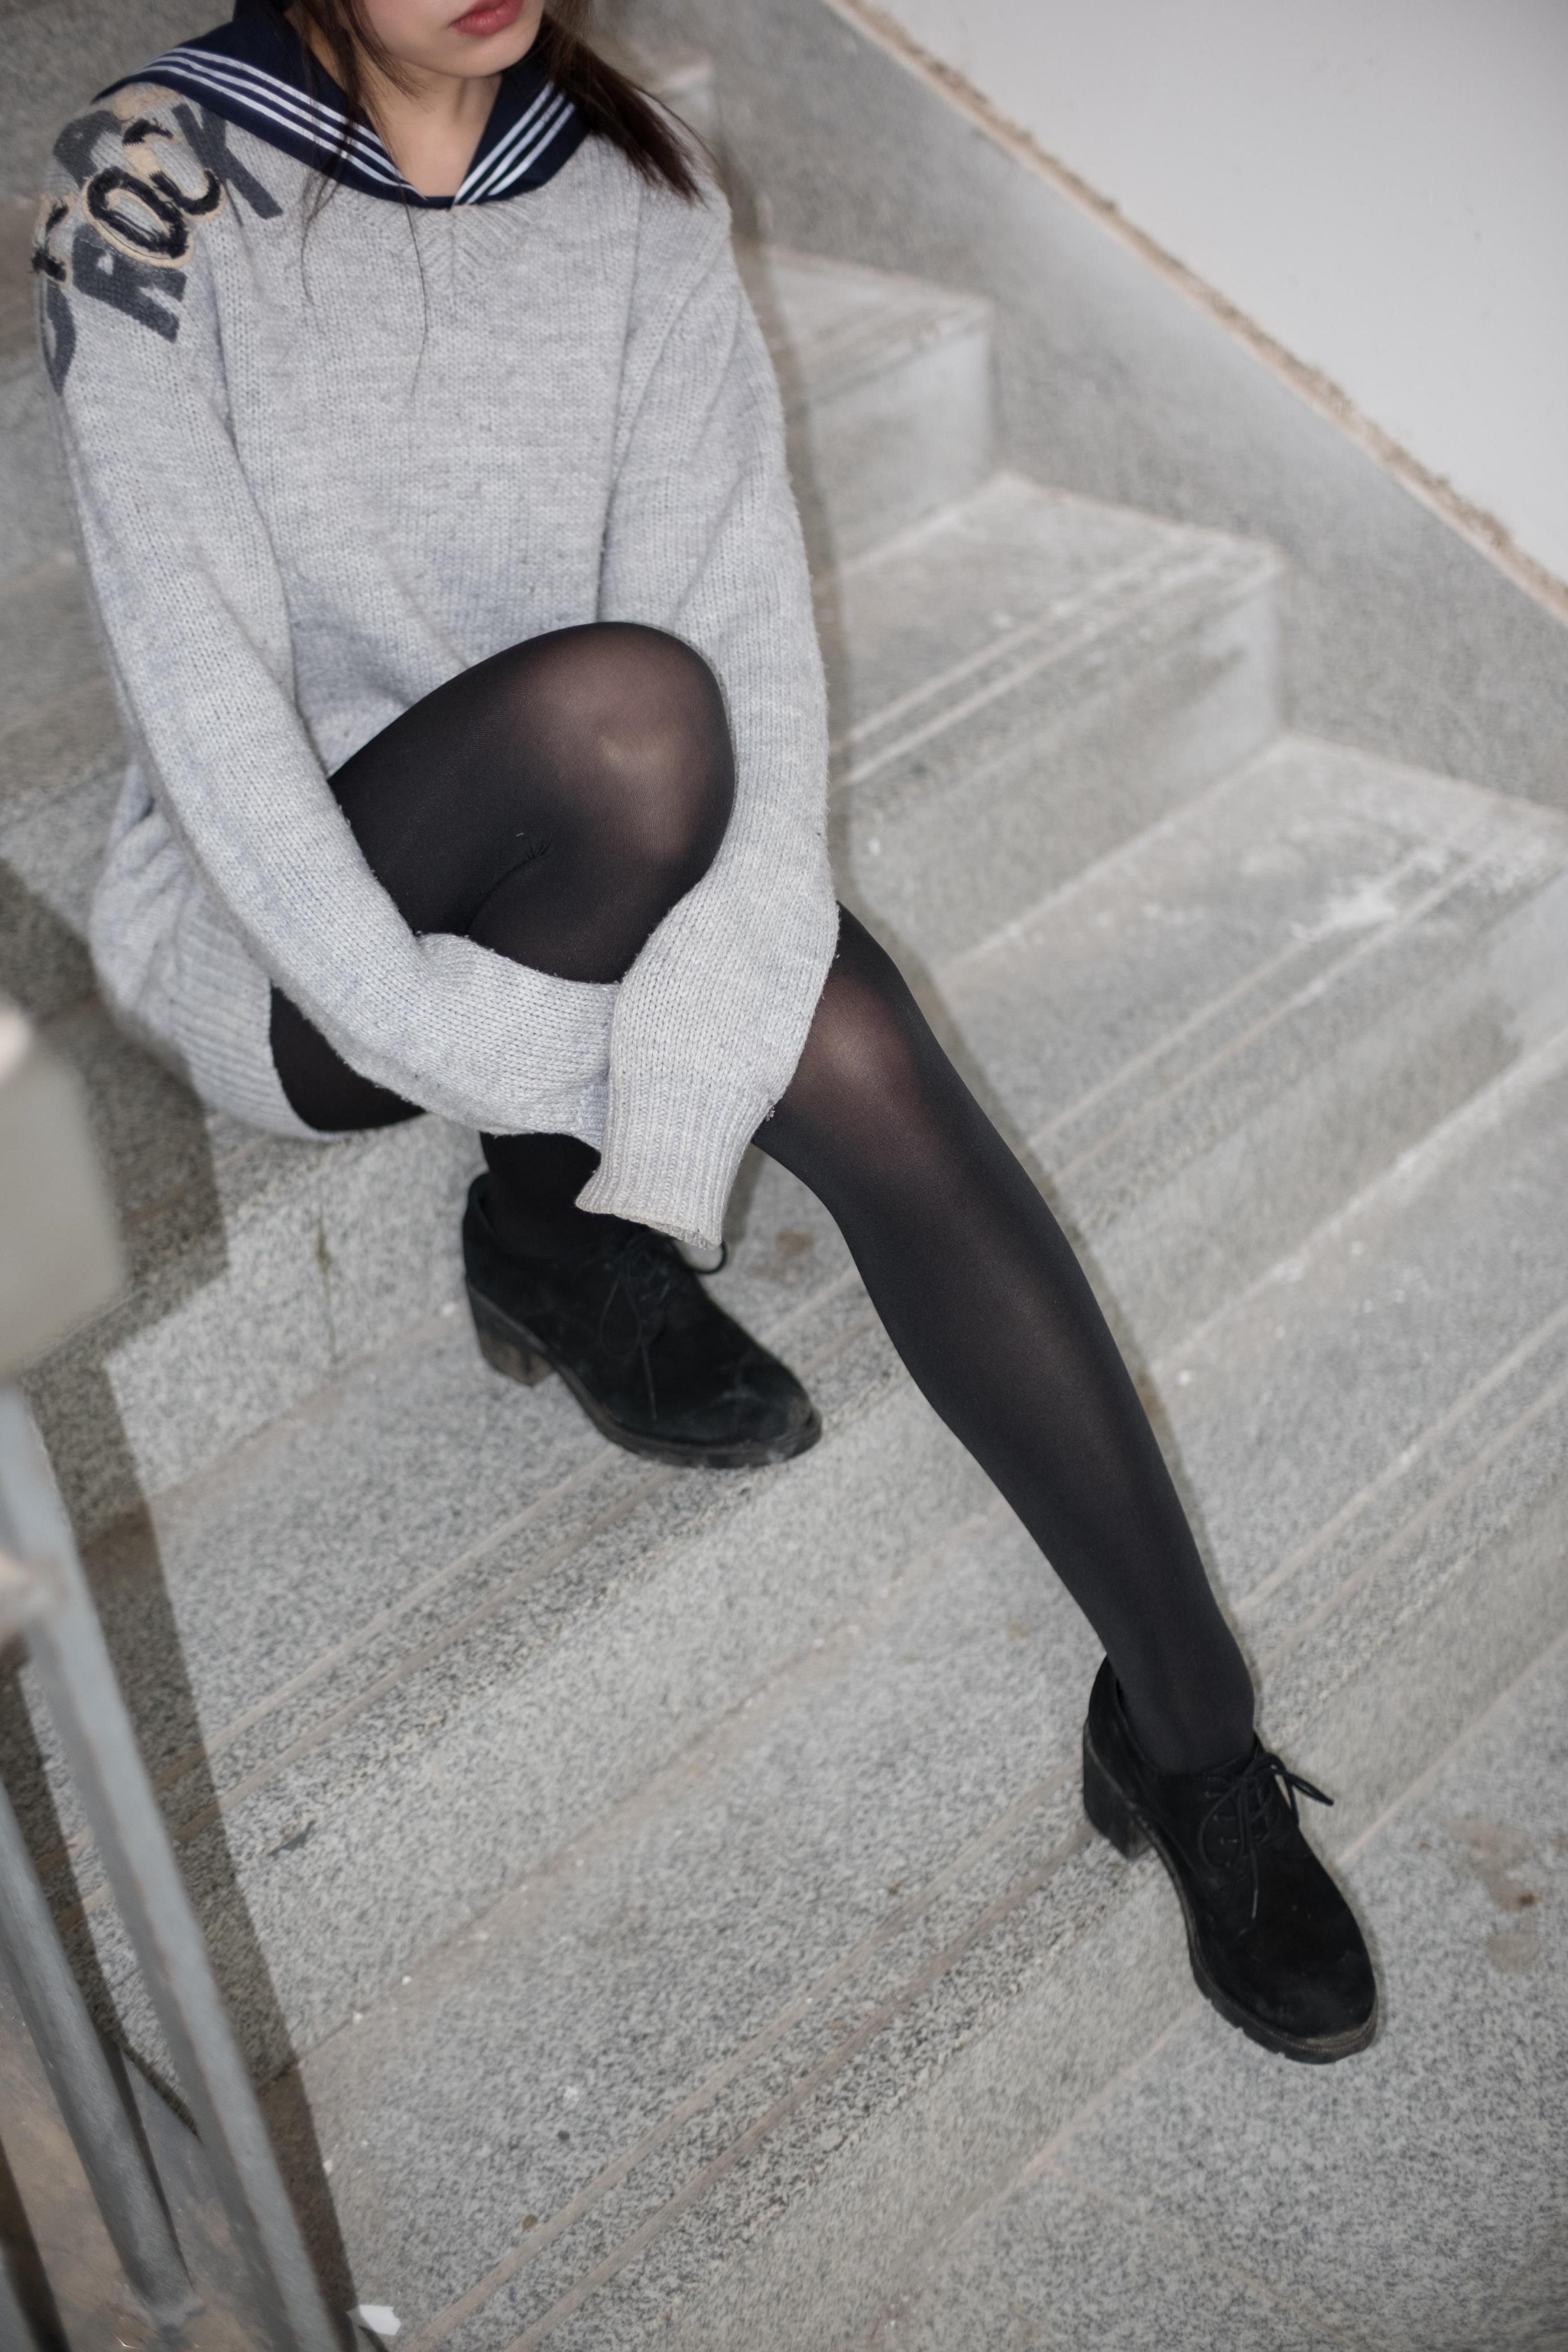 [森萝财团]BETA-007 性感小萝莉 白色连身外套加黑色丝袜美腿玉足私房写真集,